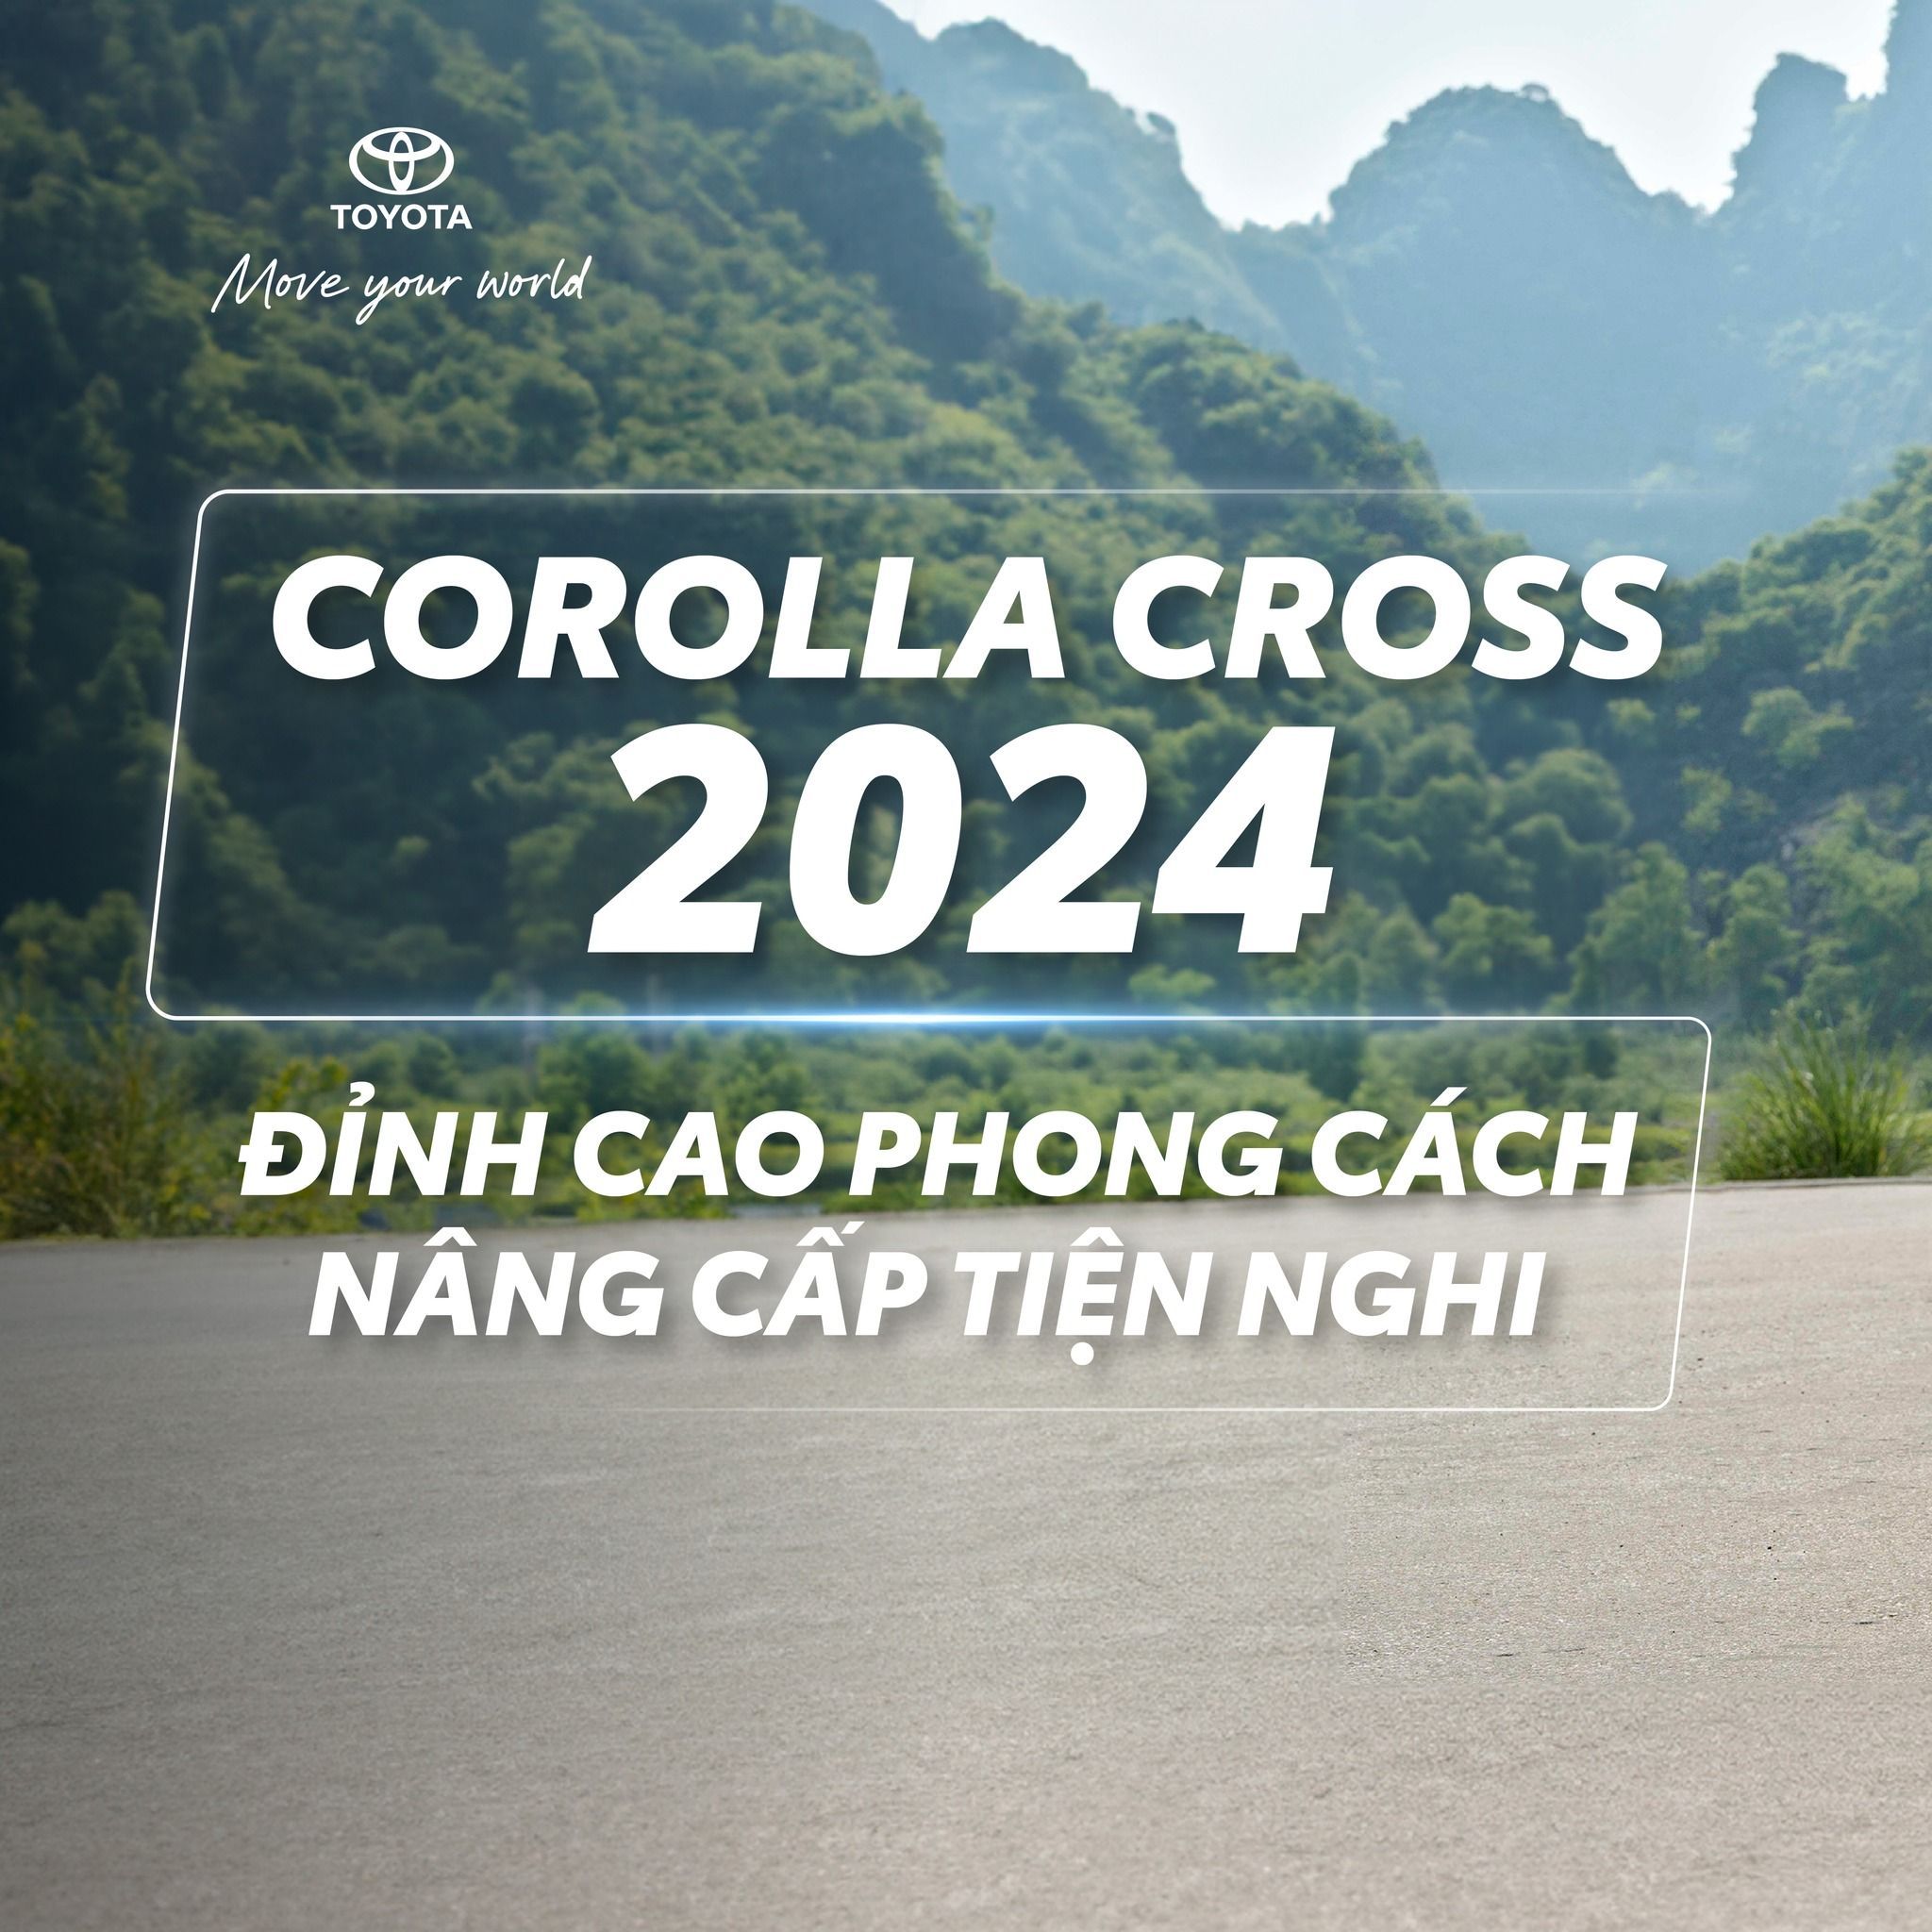 COROLLA CROSS 2024: ĐỈNH CAO PHONG CÁCH - NÂNG CẤP TIỆN NGHI